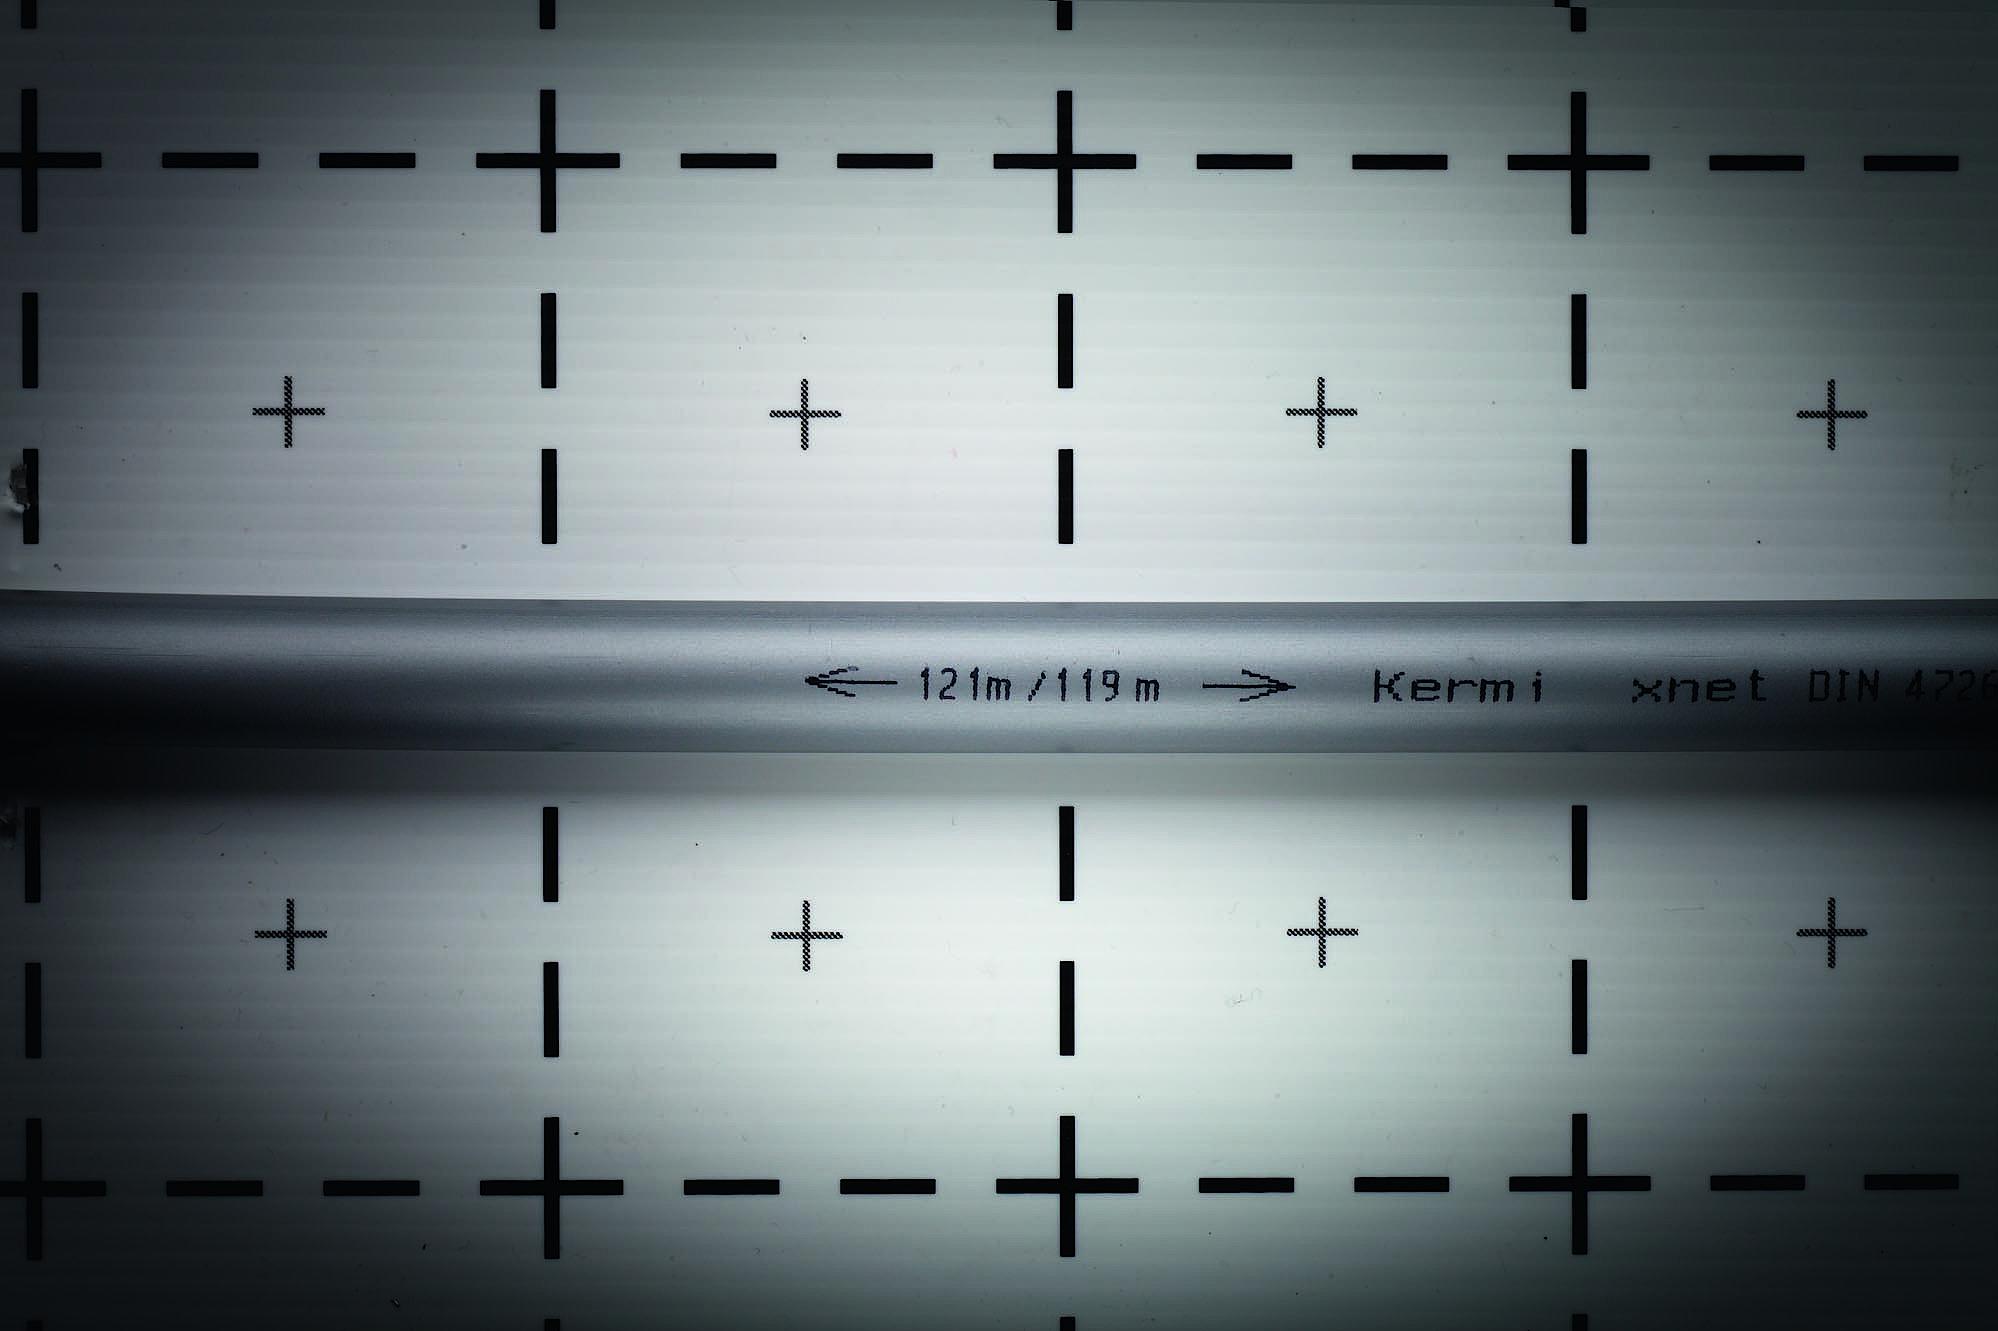 Маркування на 5-шаровій трубі Kermi x-net PE-Xc із зазначенням використаної та залишкової довжини труби для забезпечення оптимального використання.